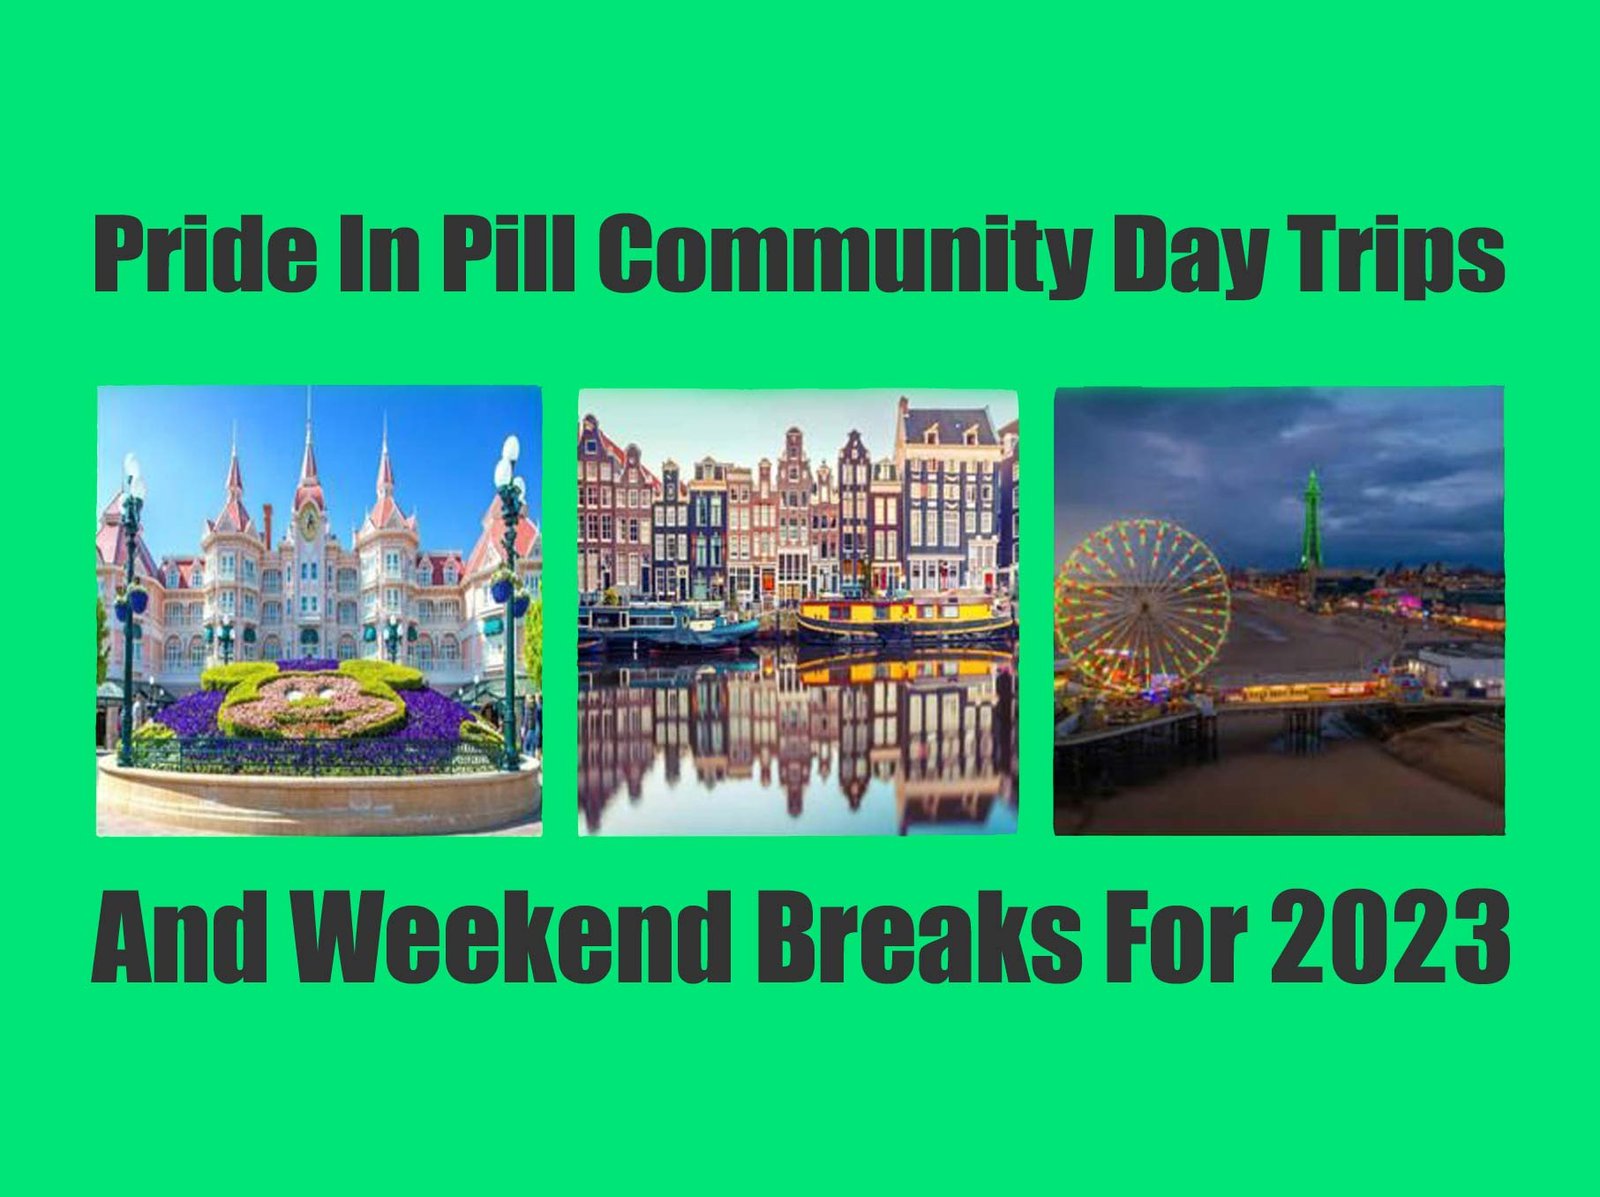 pip weekenders breaks day trips 2023 pride pill